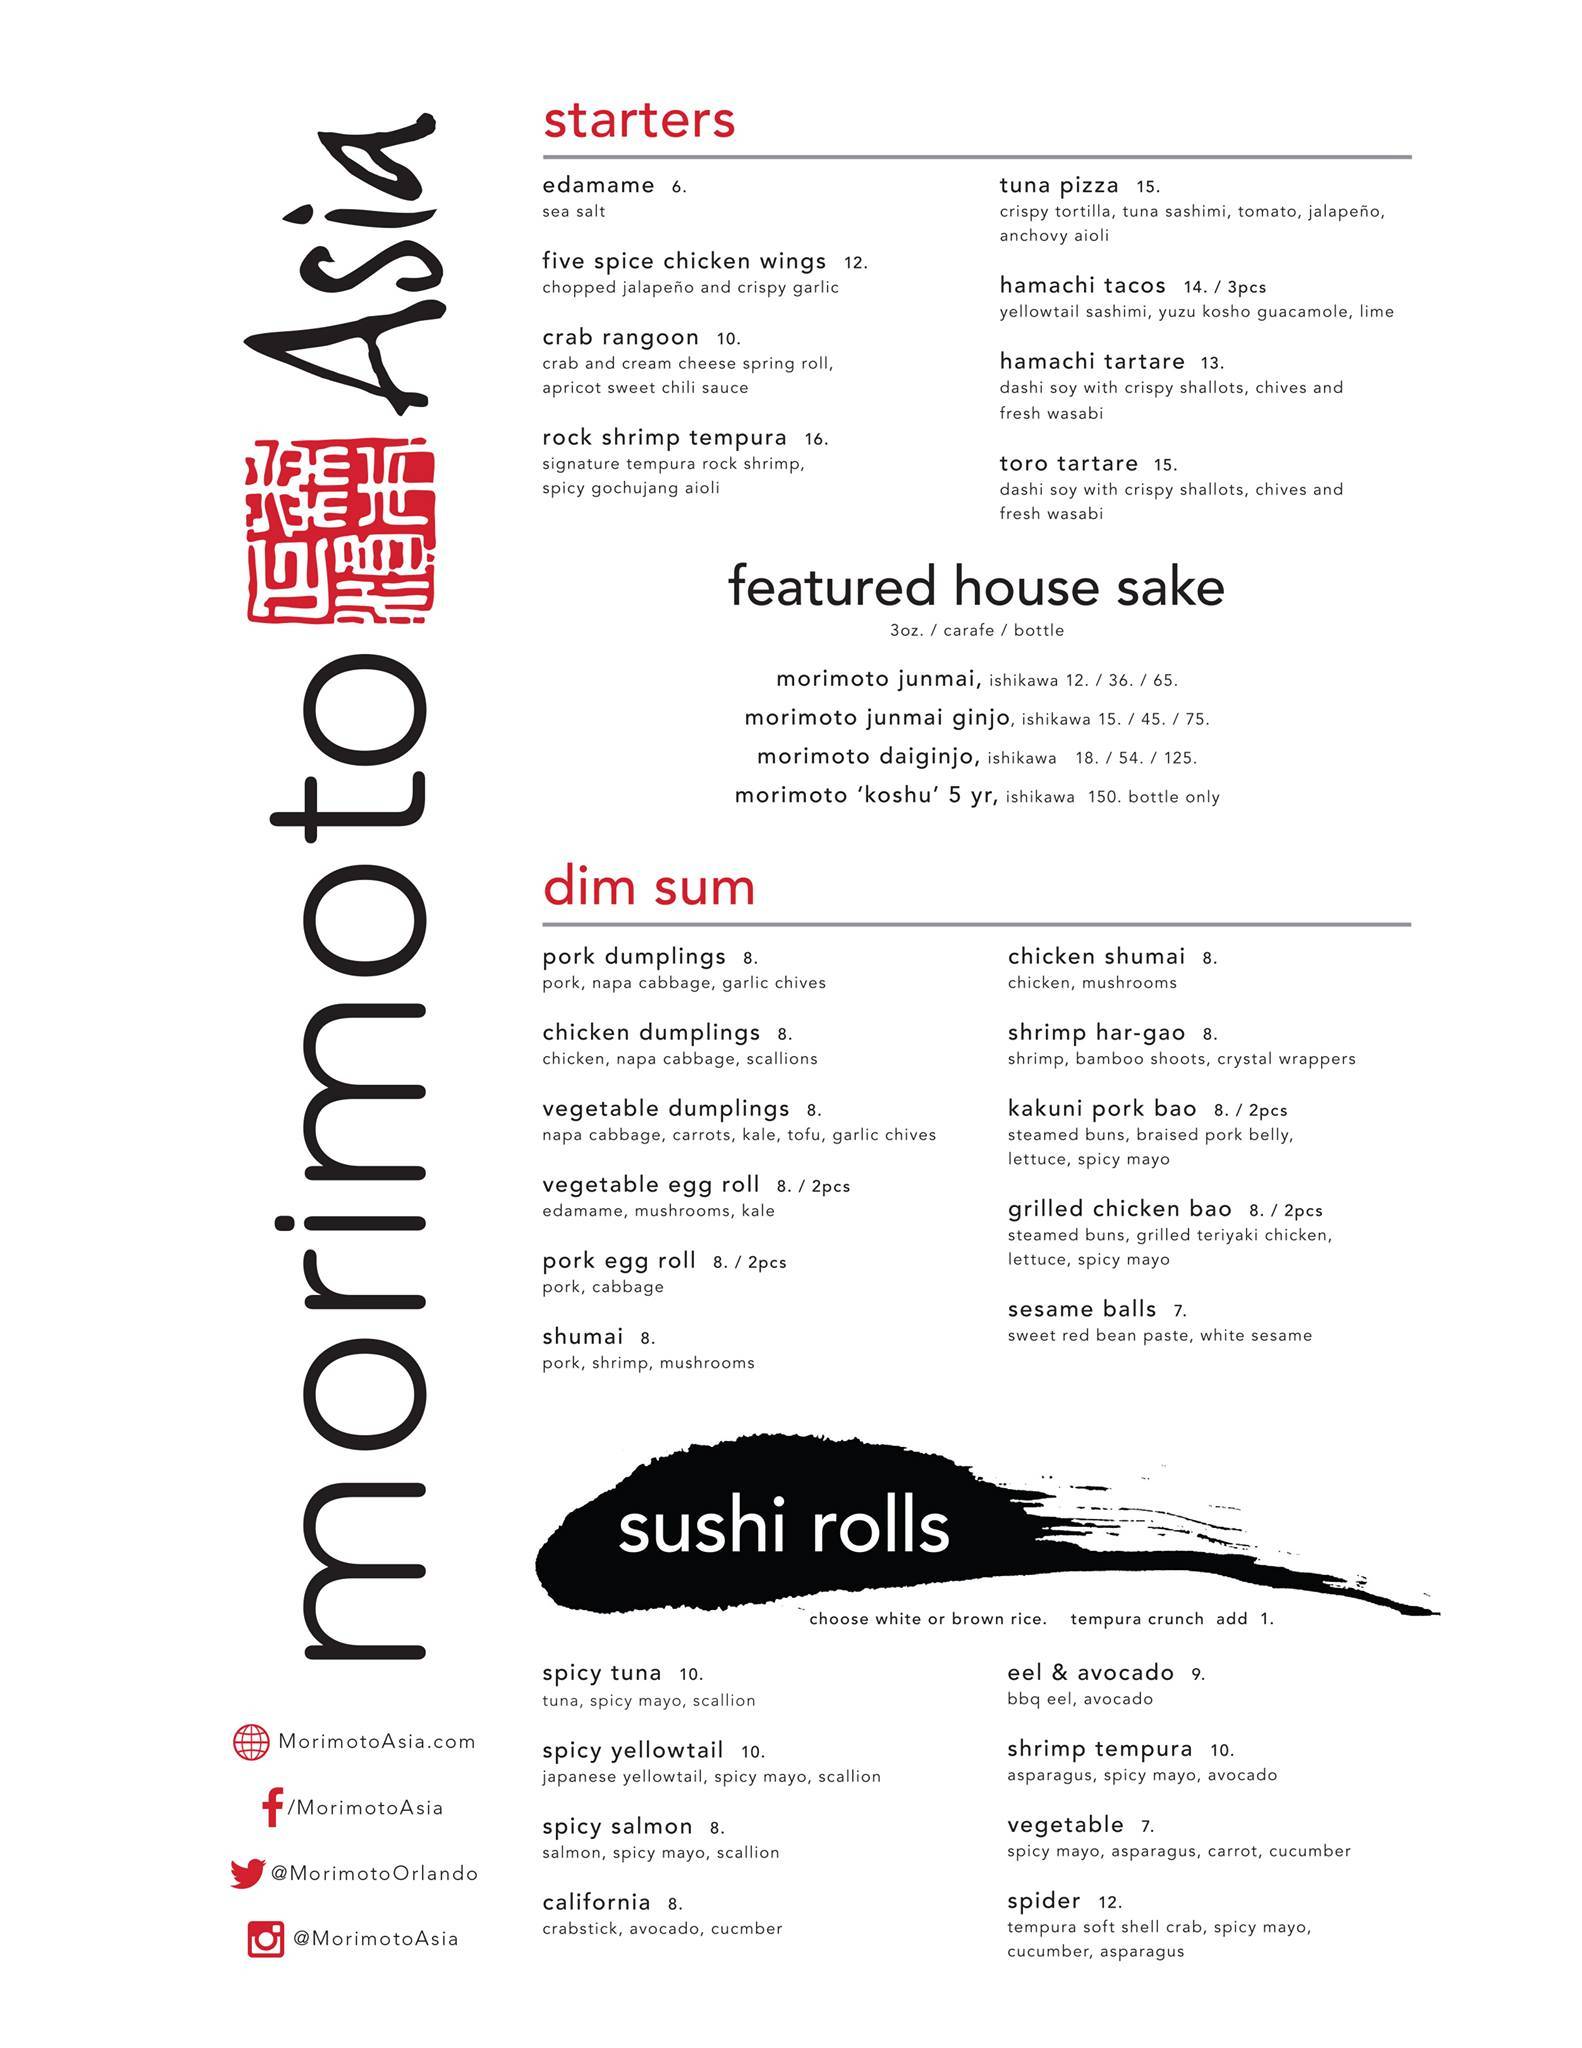 Morimoto Asia dinner menu - Page 1